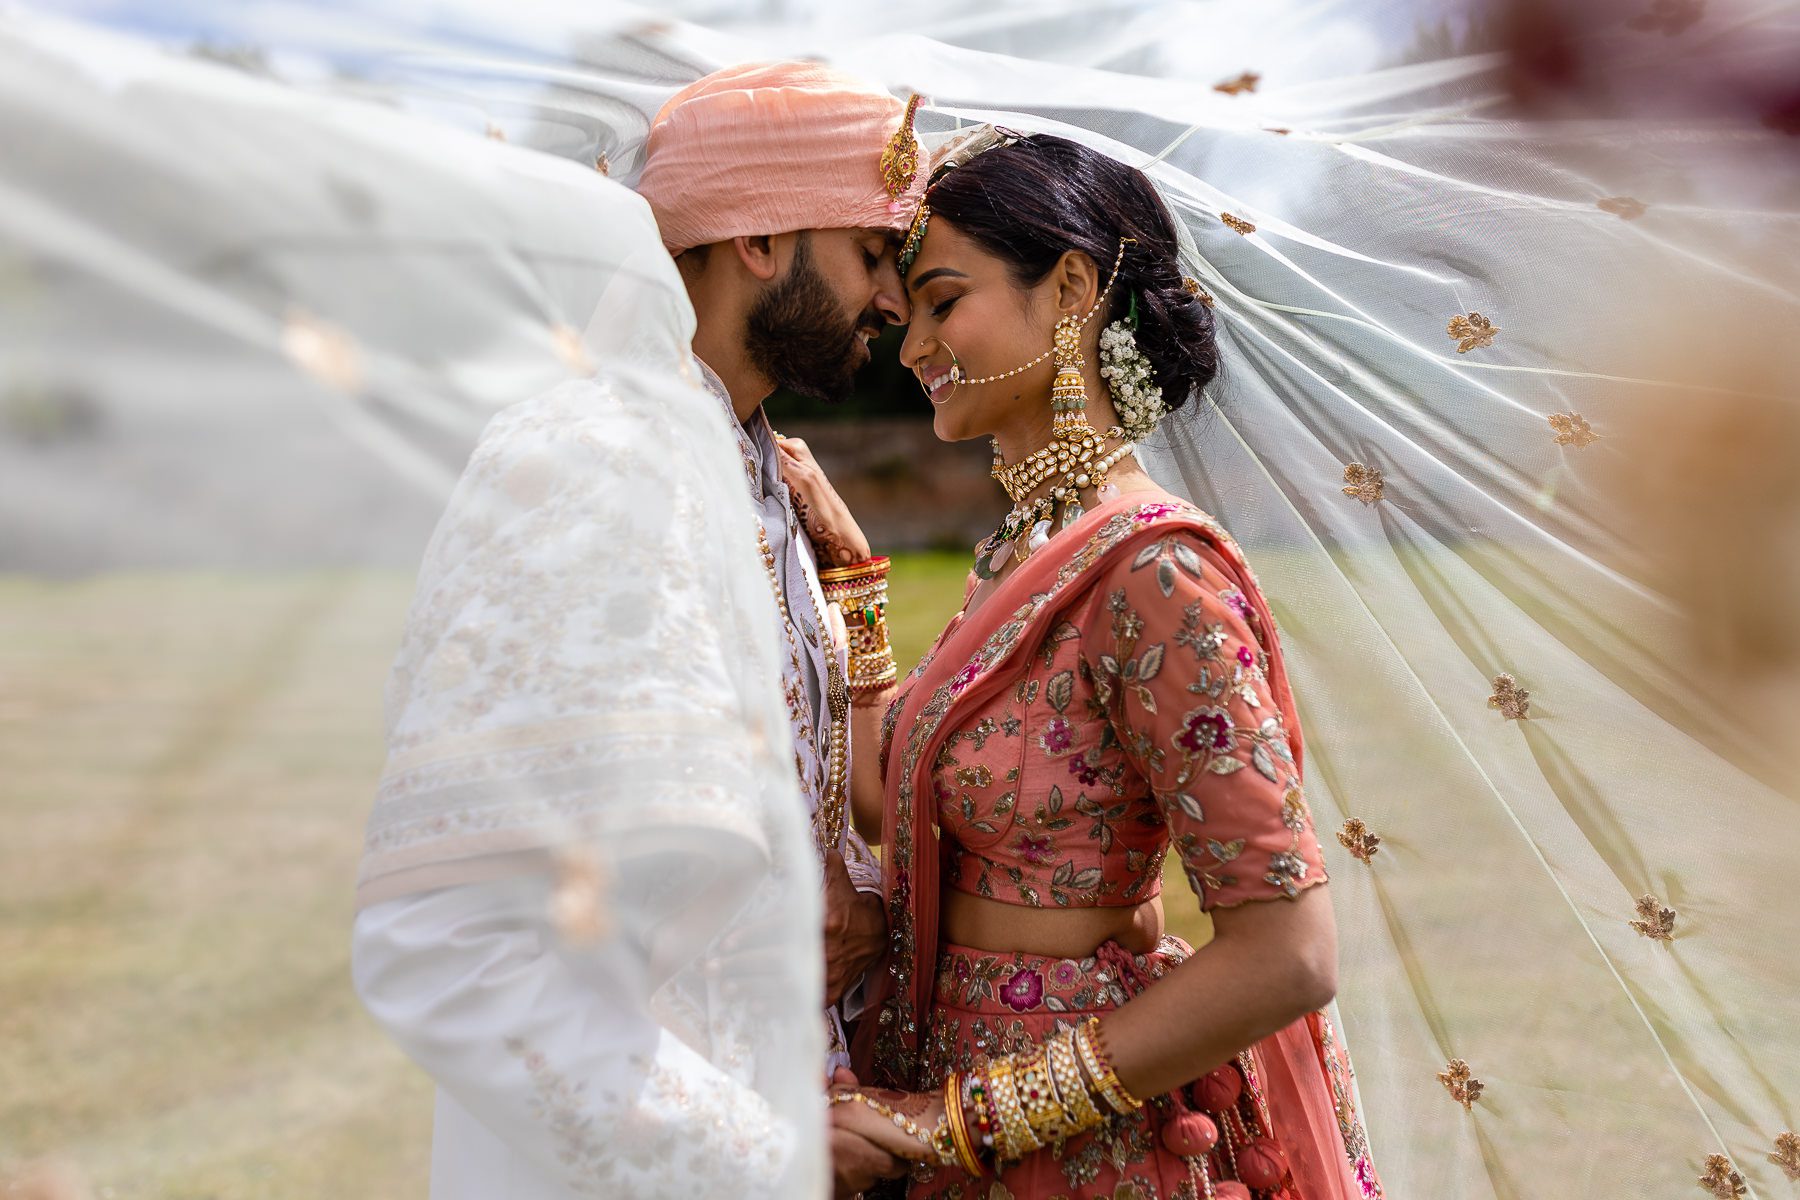 Niki and Sunit’s Hindu wedding at North Mymms Park